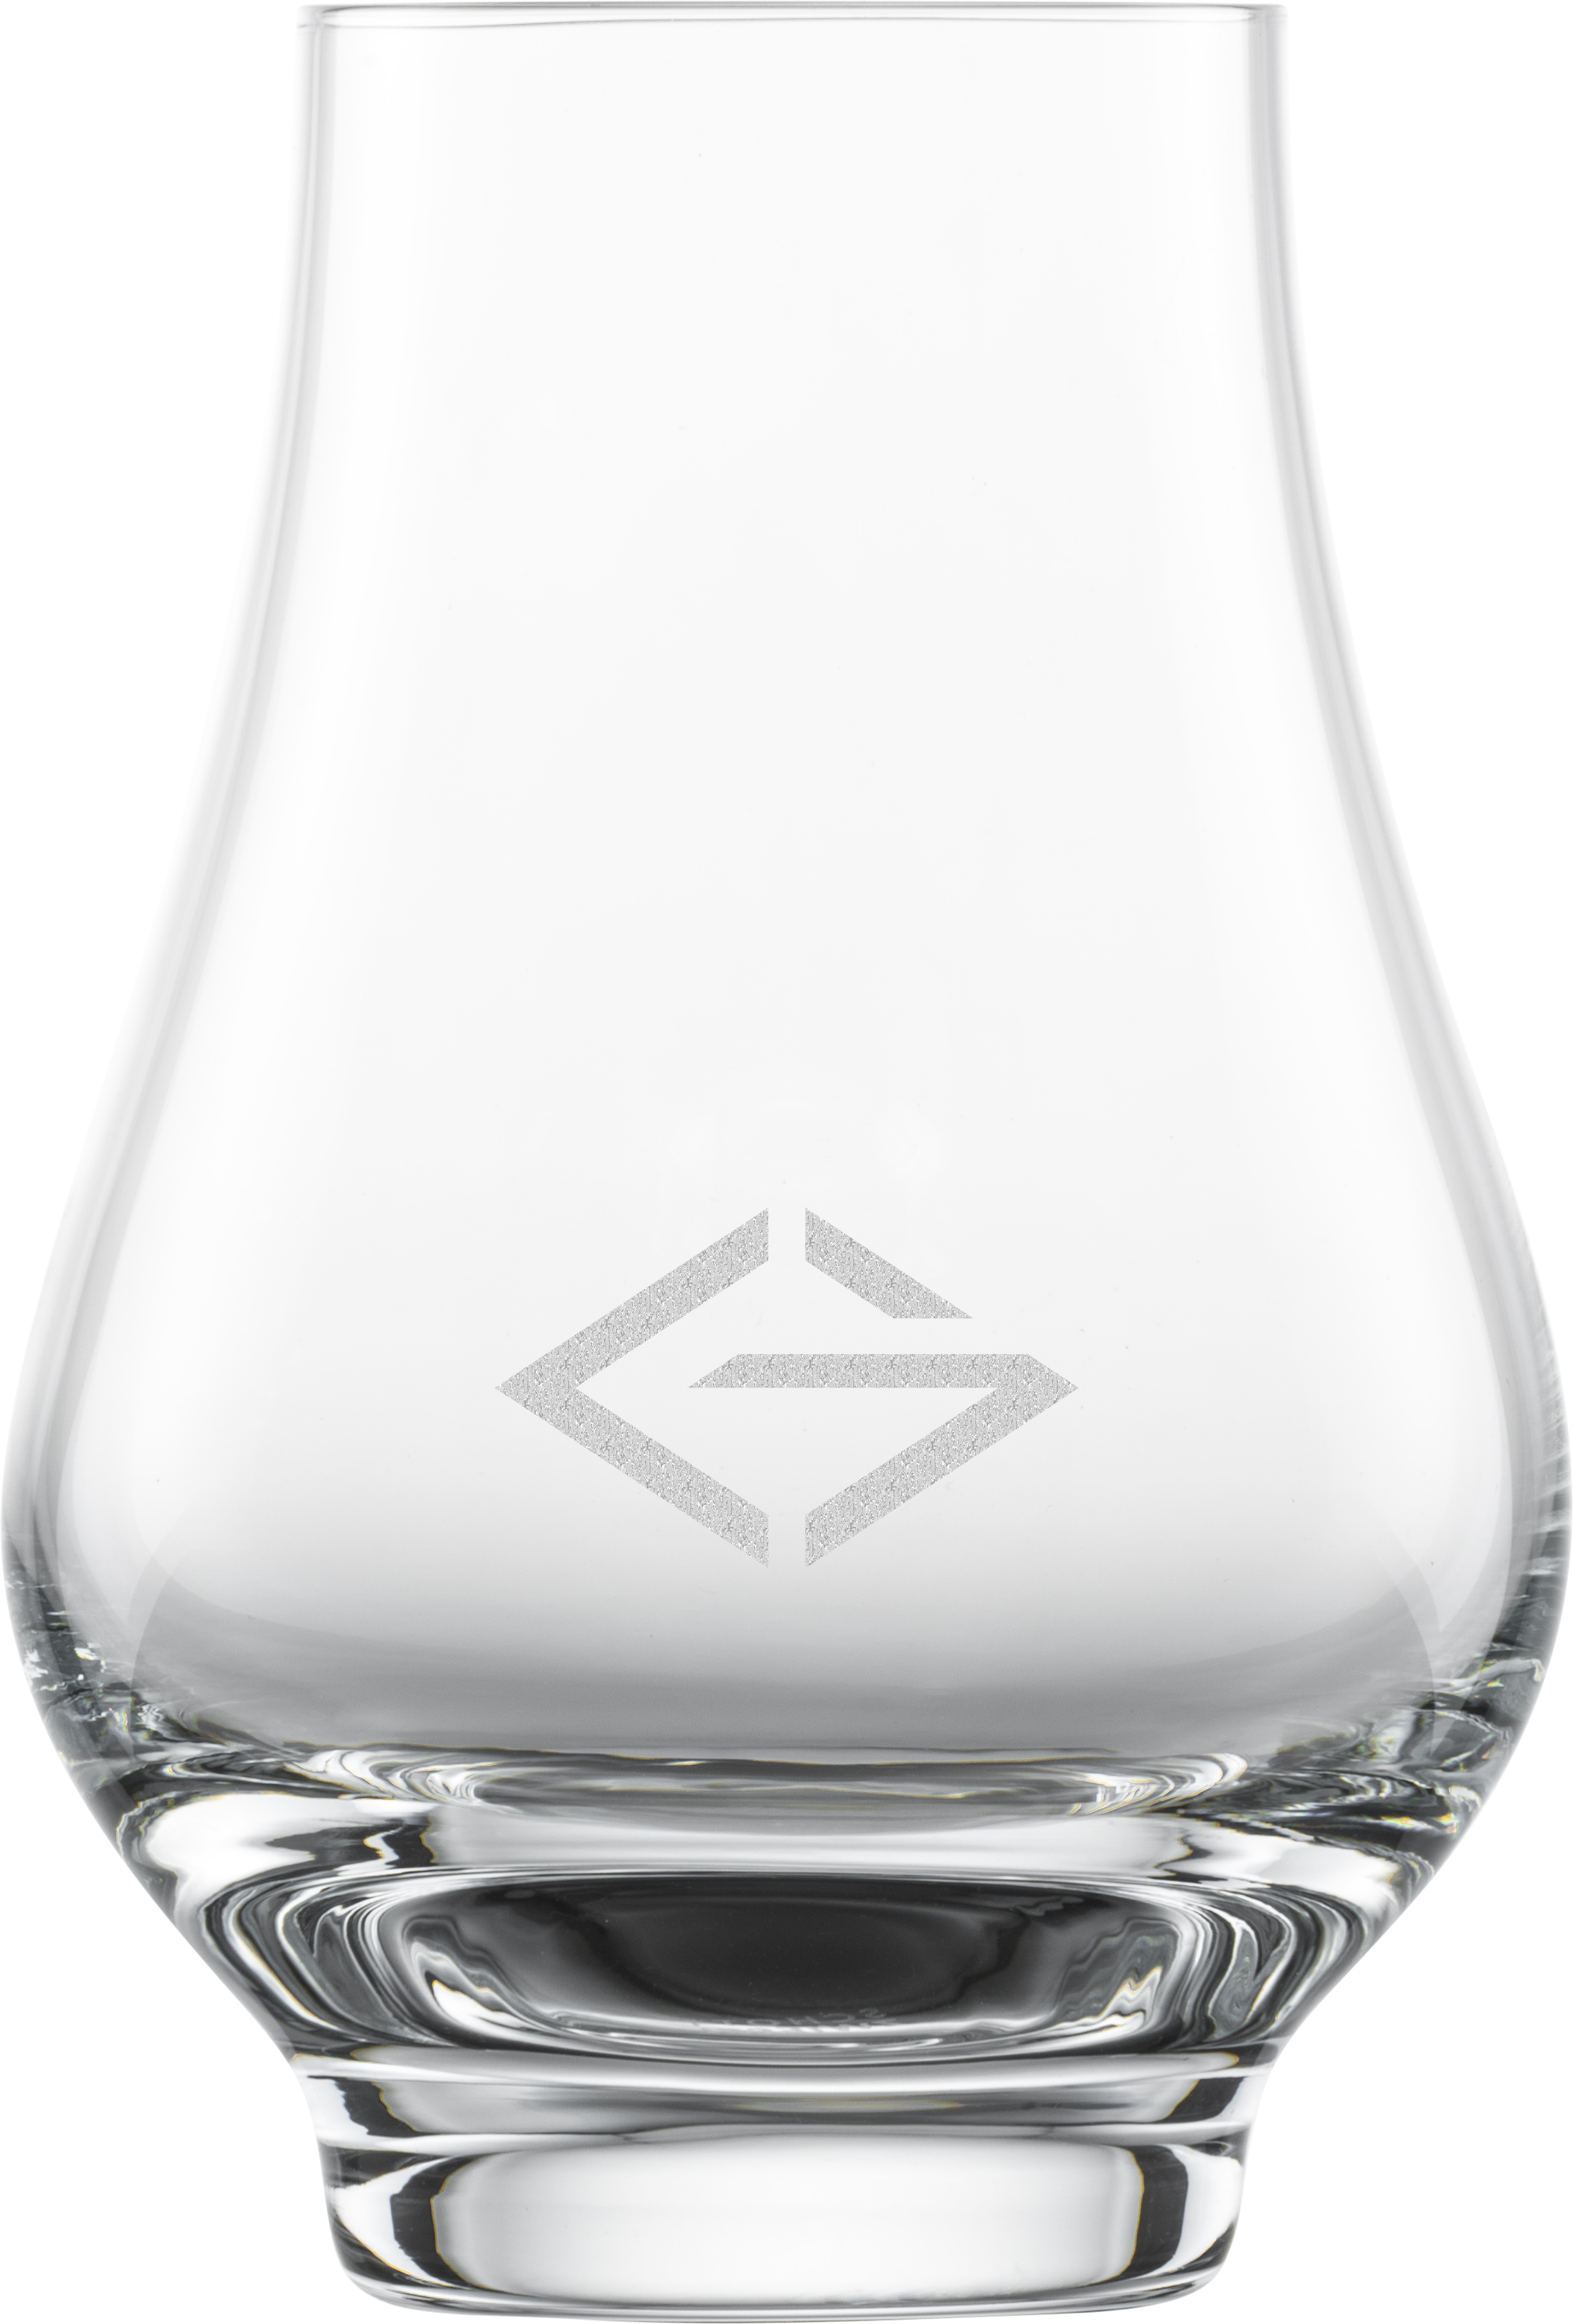 Whisky Nosing glas mit Logo